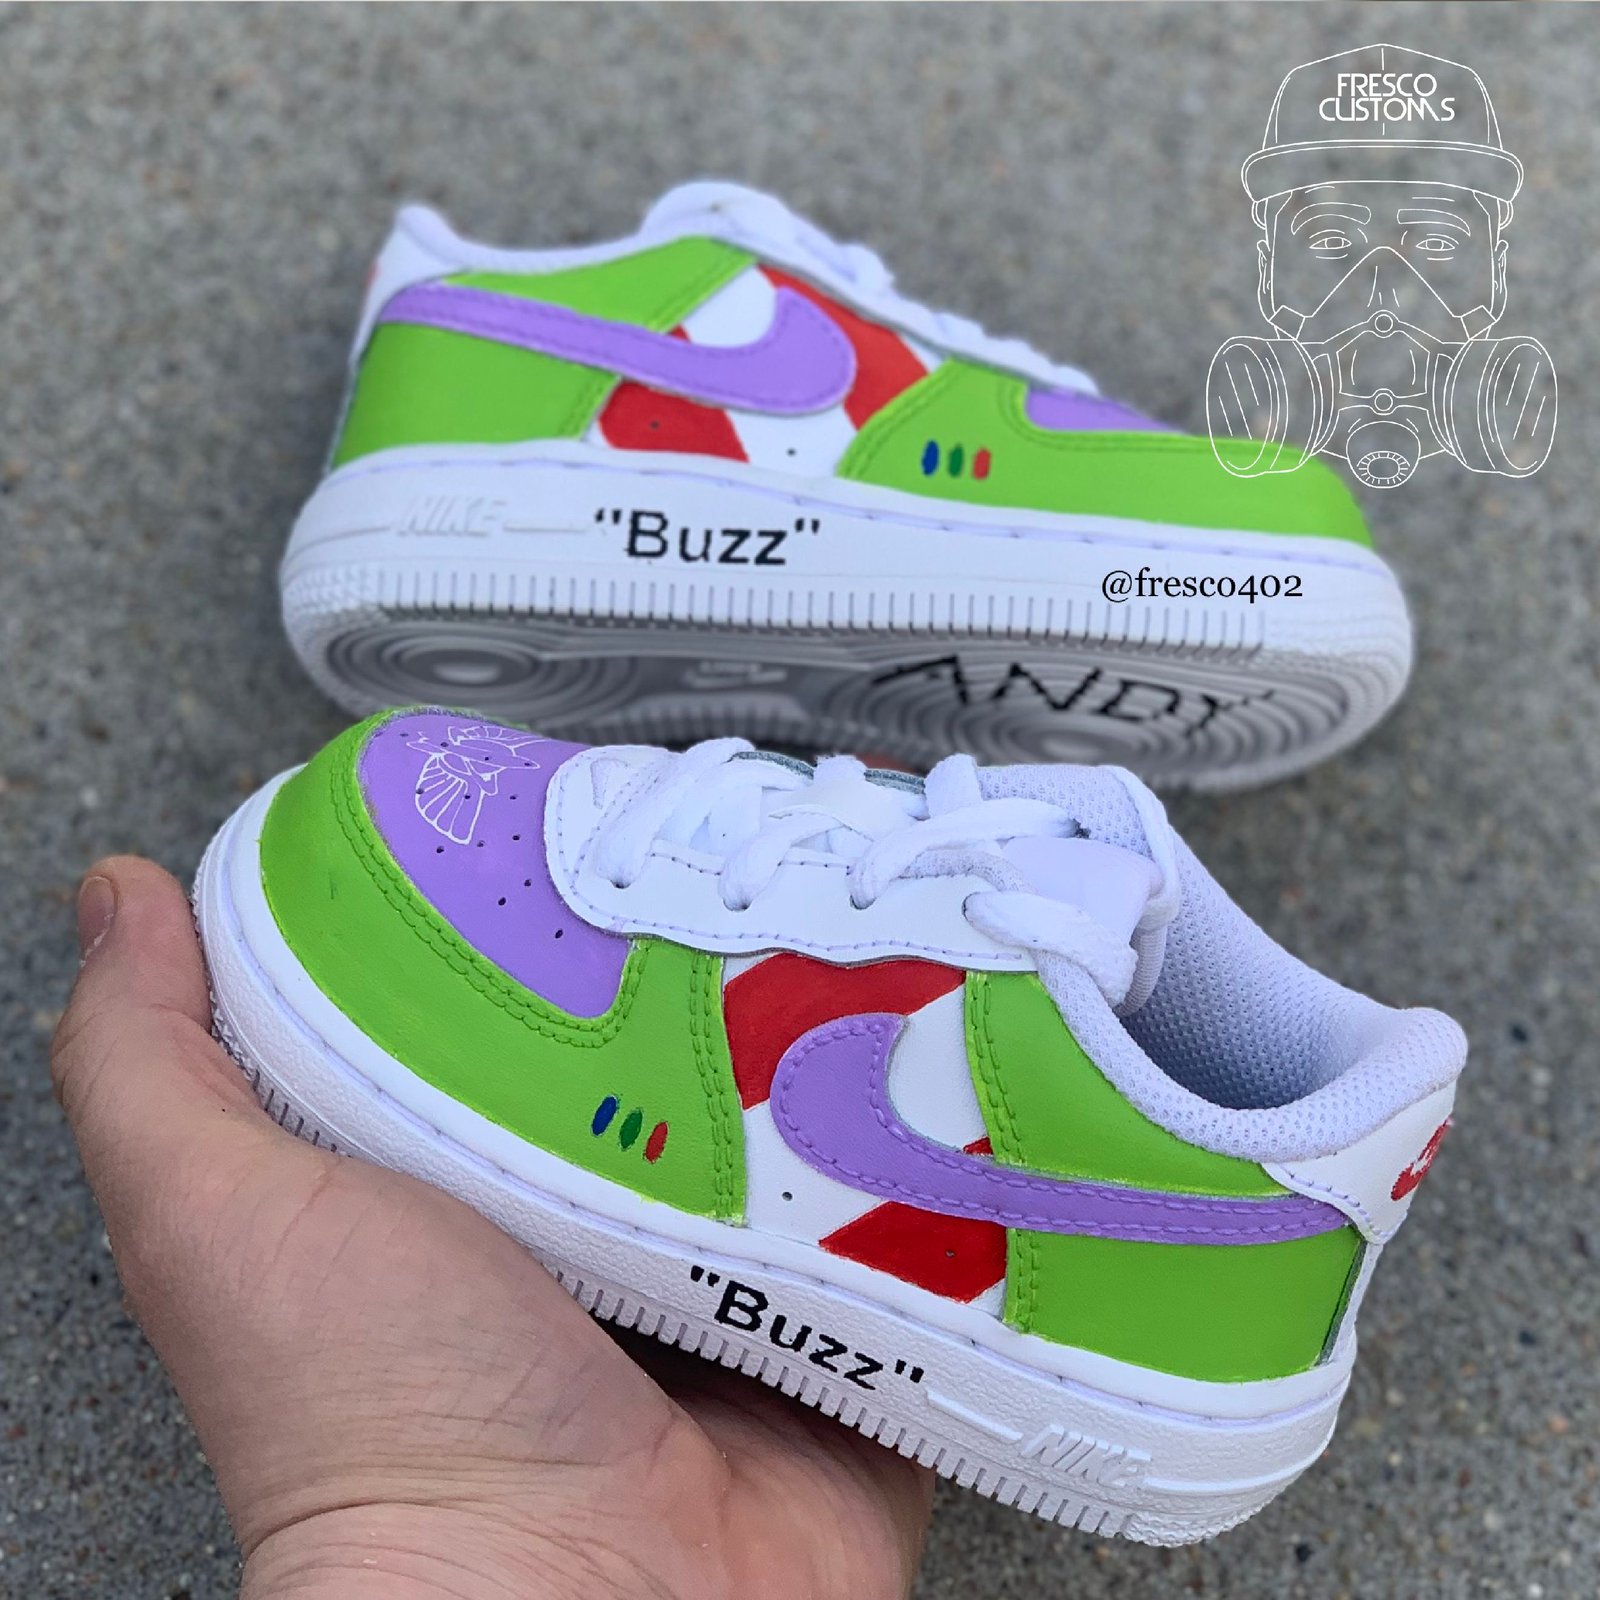 buzz lightyear sneakers nike